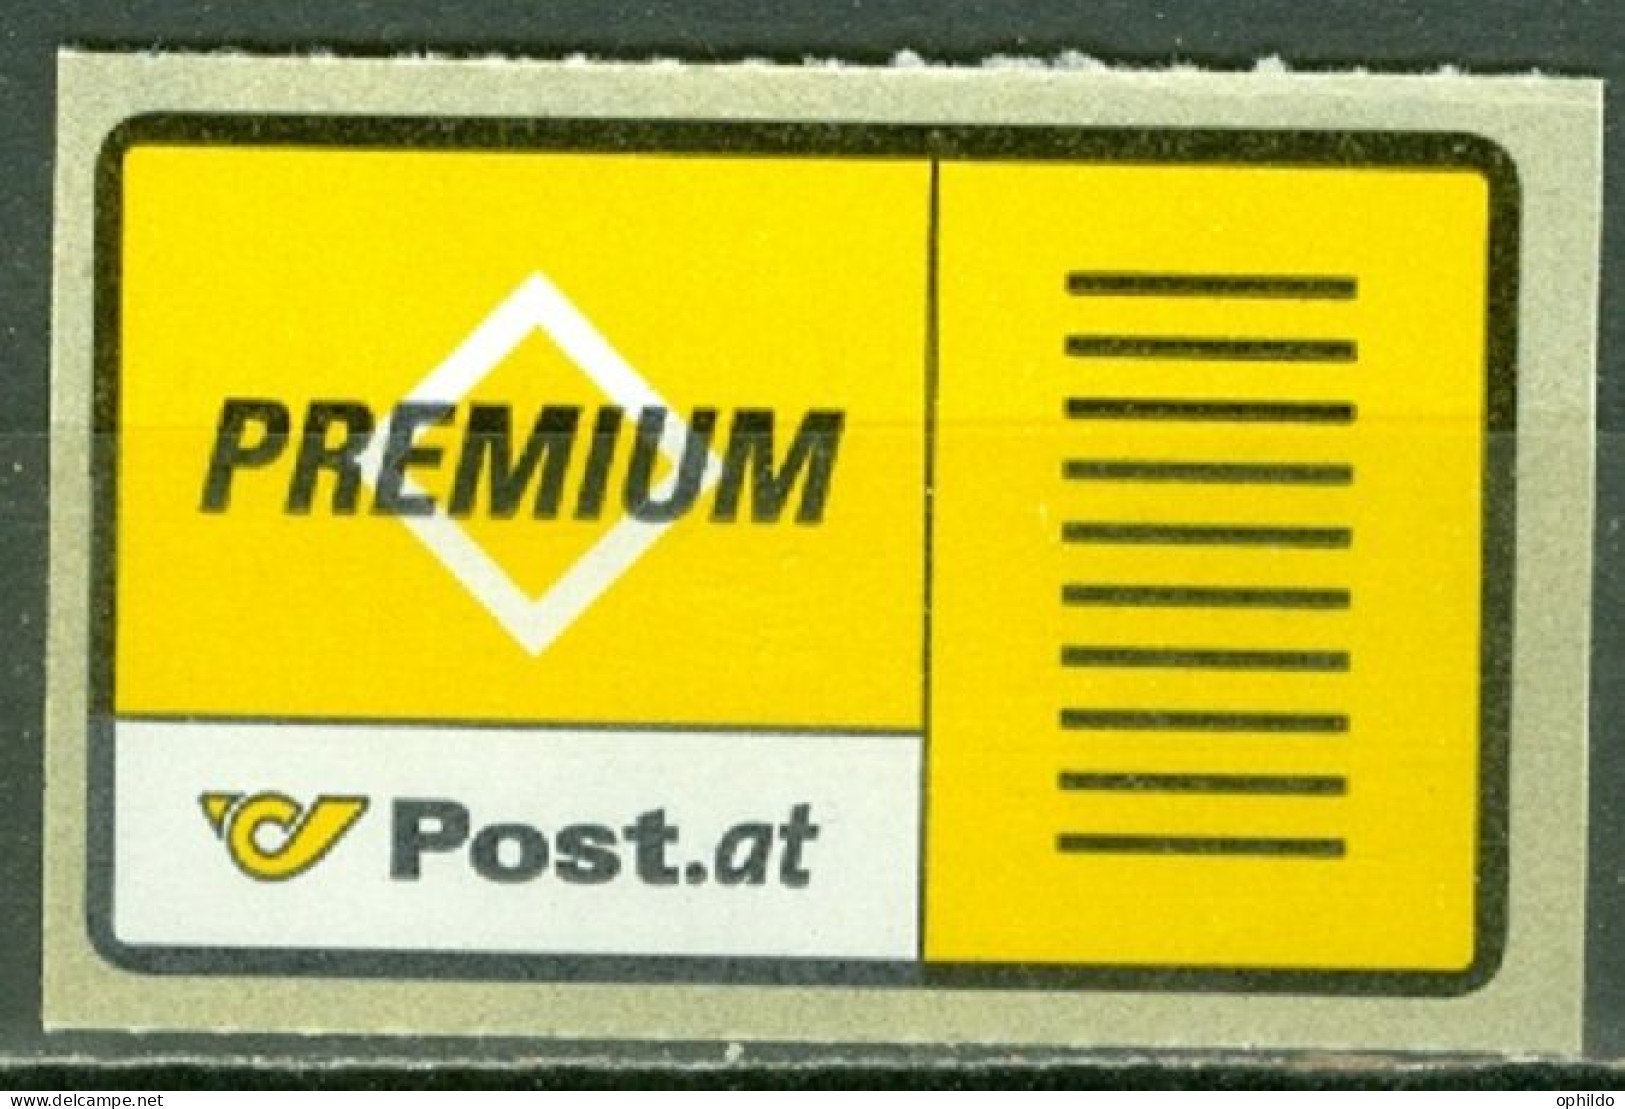 Autriche   Premium-Brief - Wertzeichen  Michel  1  * *  TB   - Nuevos